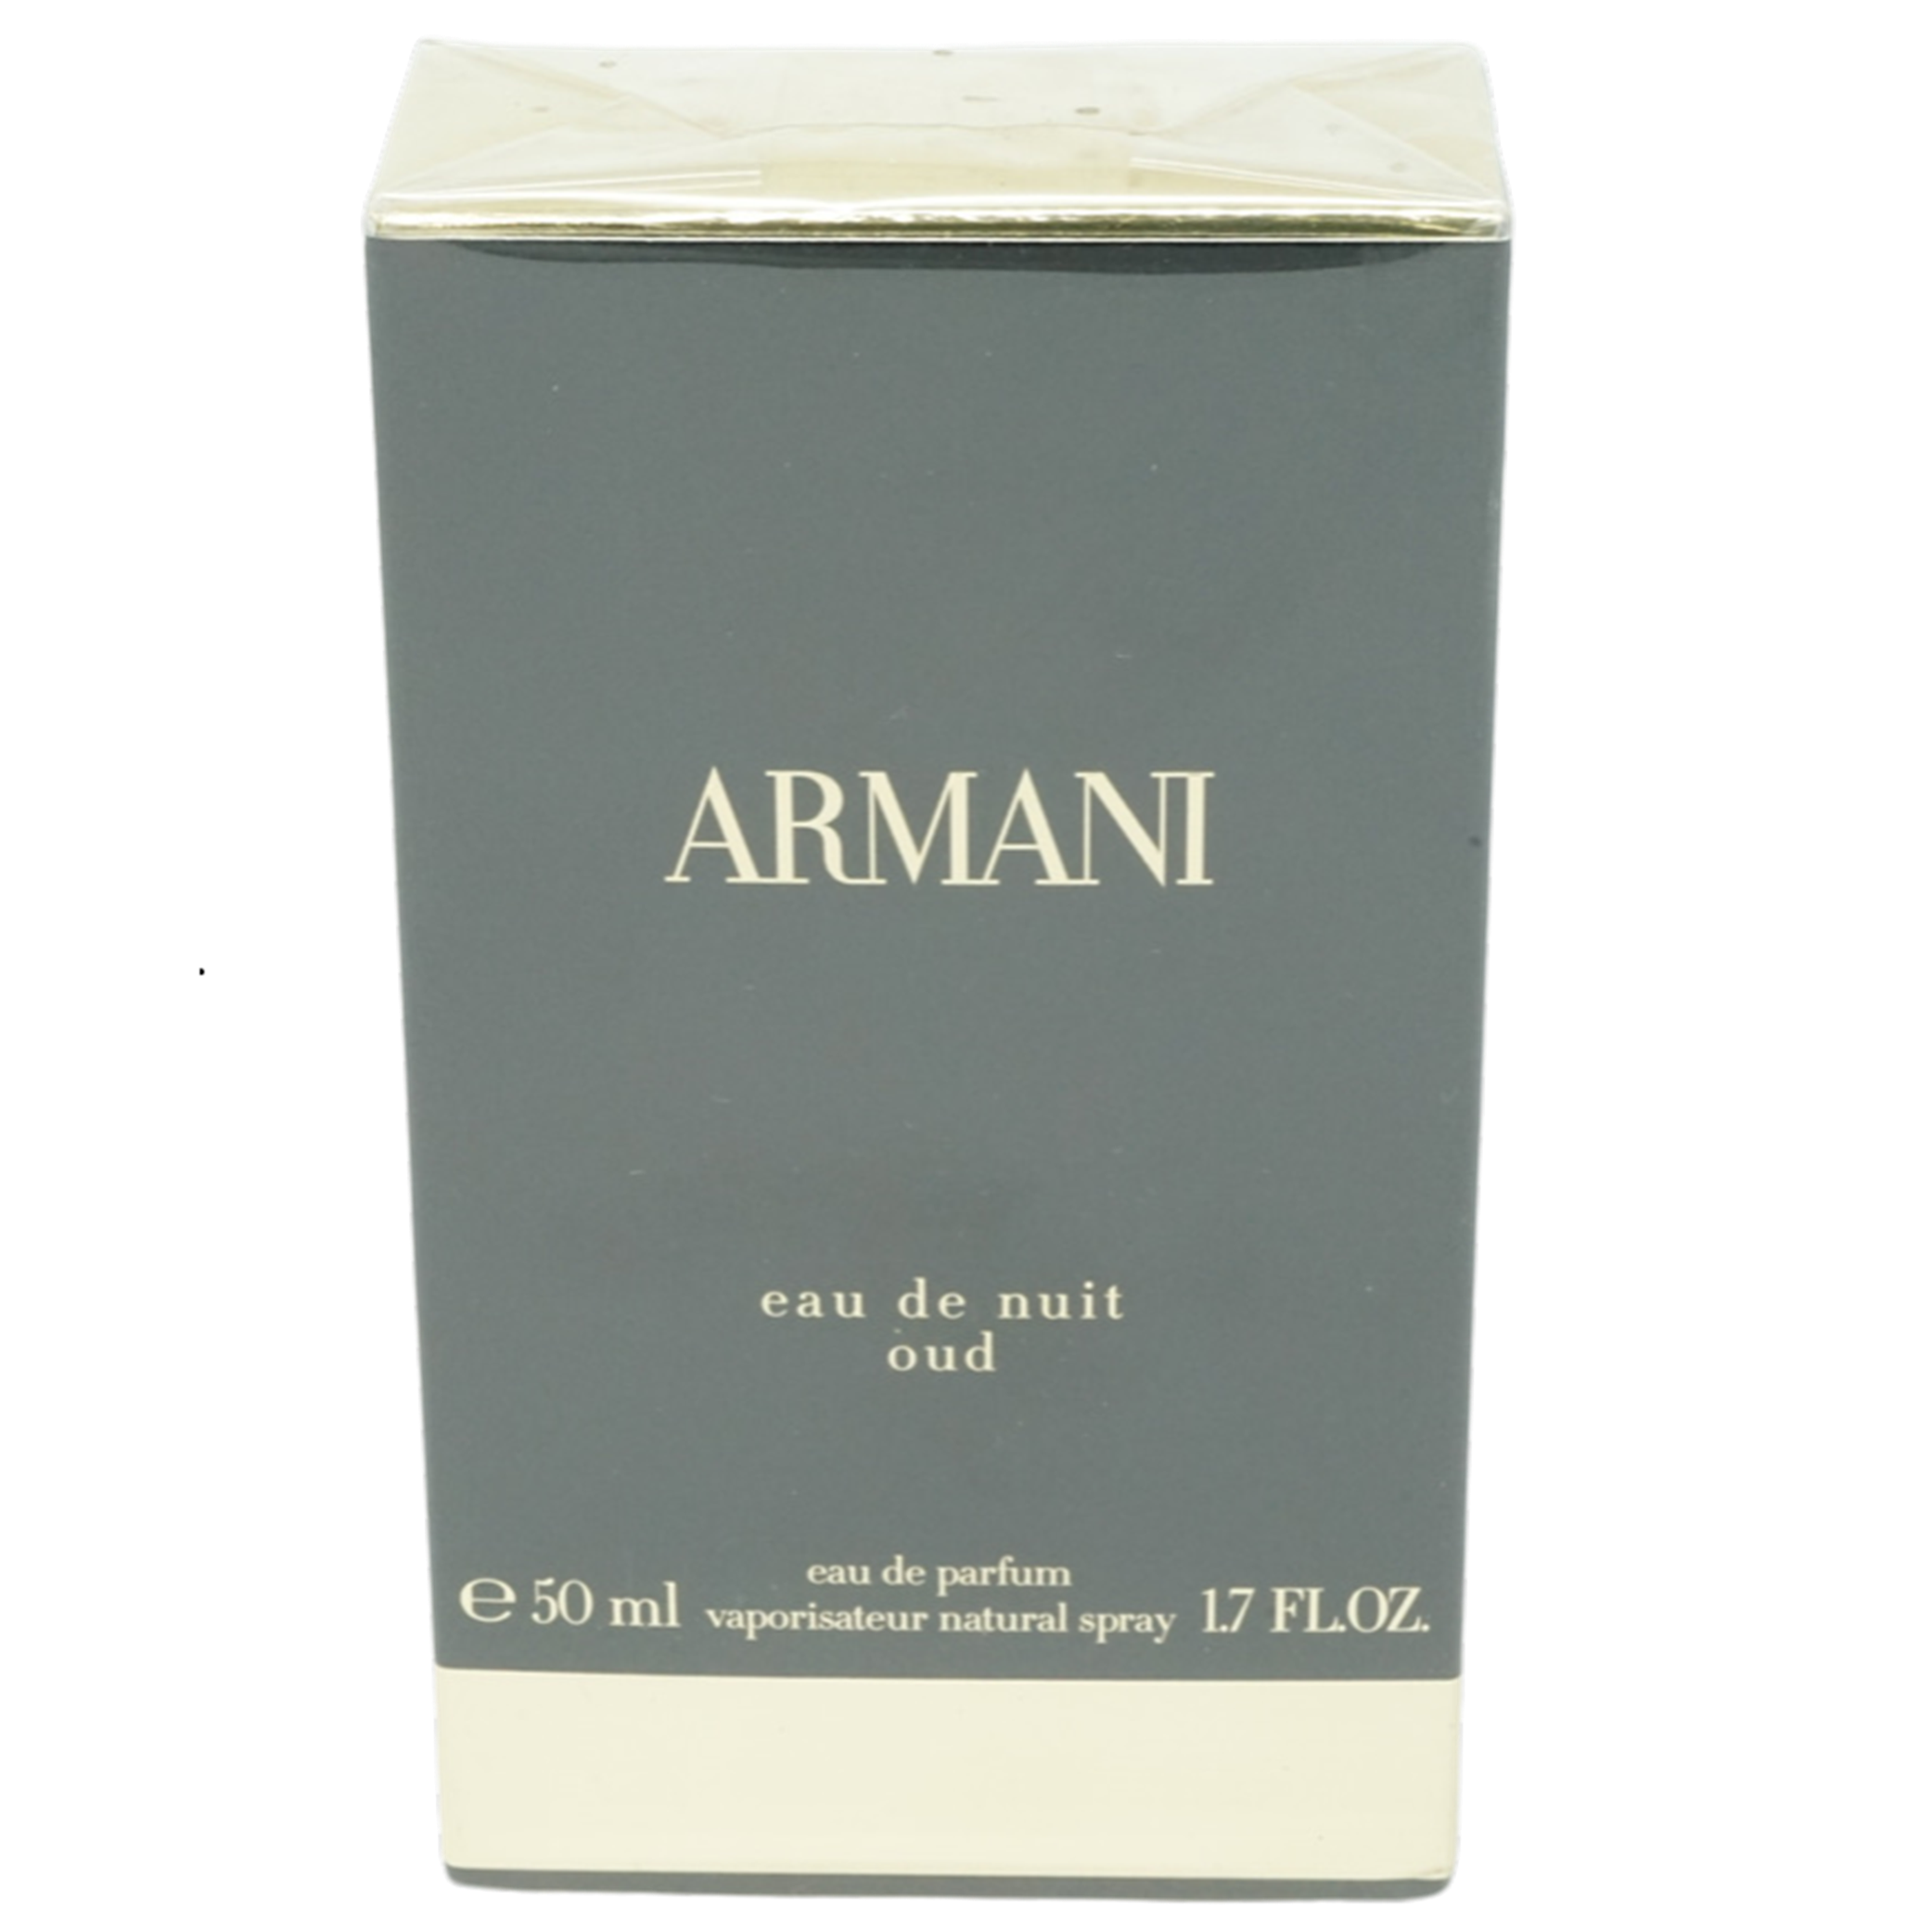 Armani Eau de Nuit Oud Eau de parfum 50ml